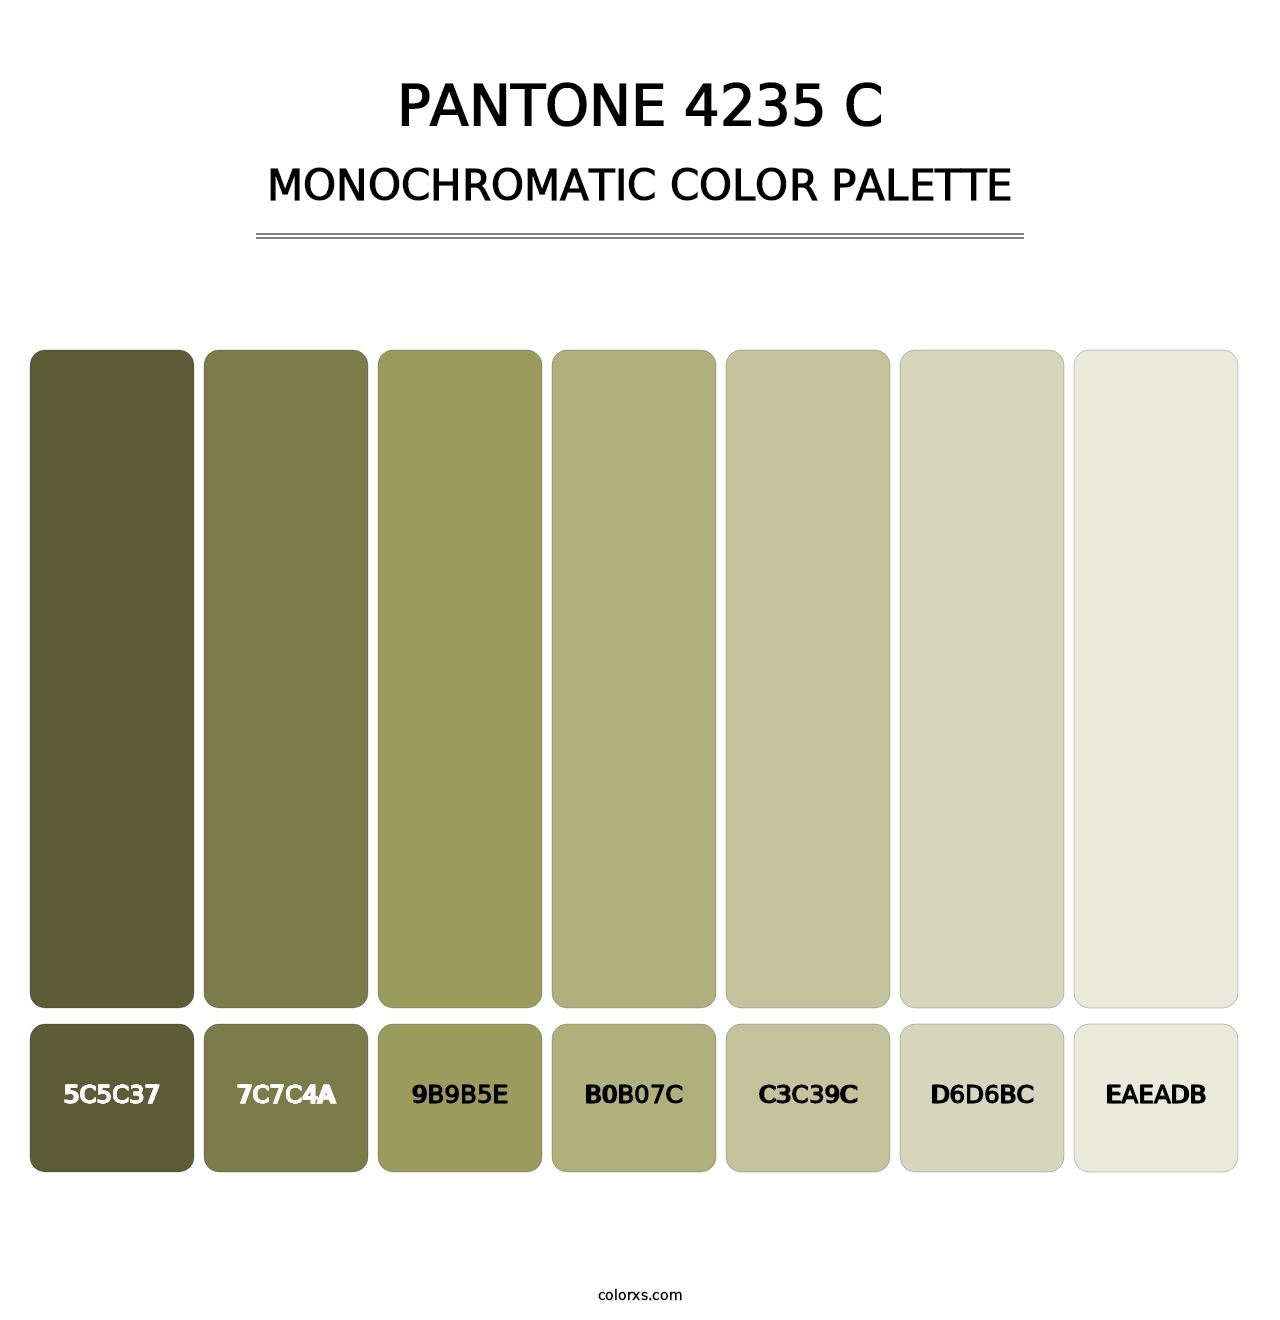 PANTONE 4235 C - Monochromatic Color Palette